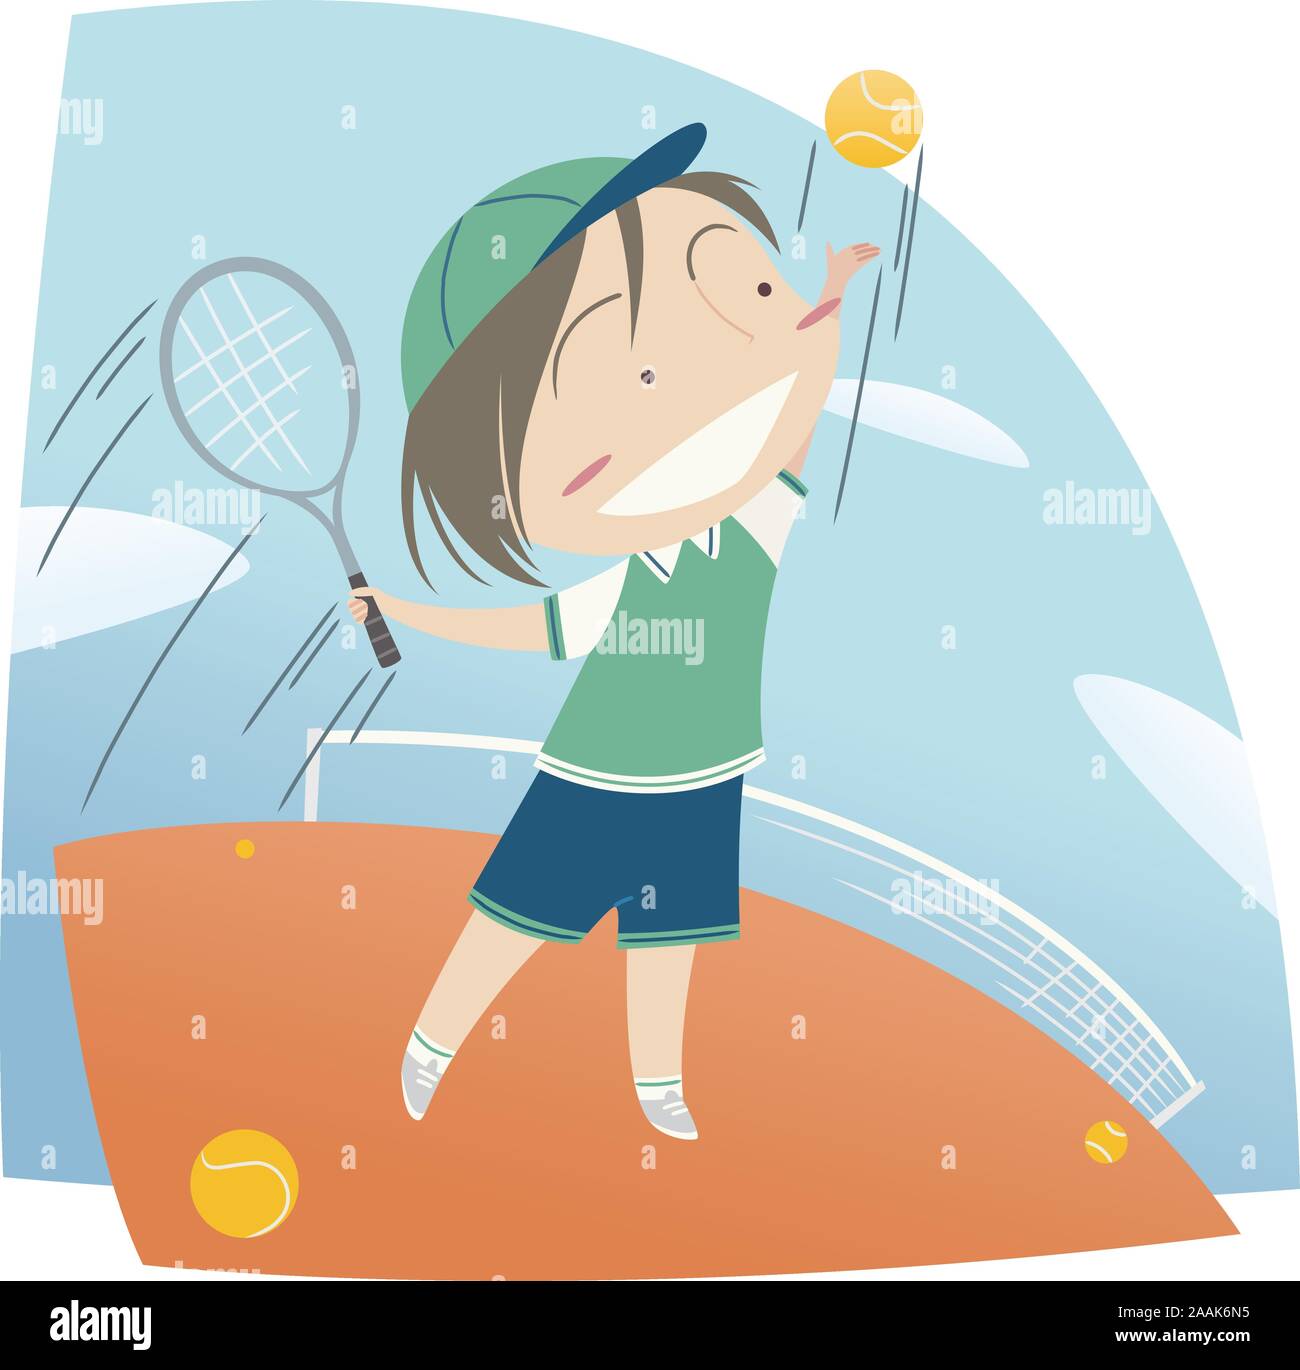 Little boy playing tennis cartoon Stock Vector